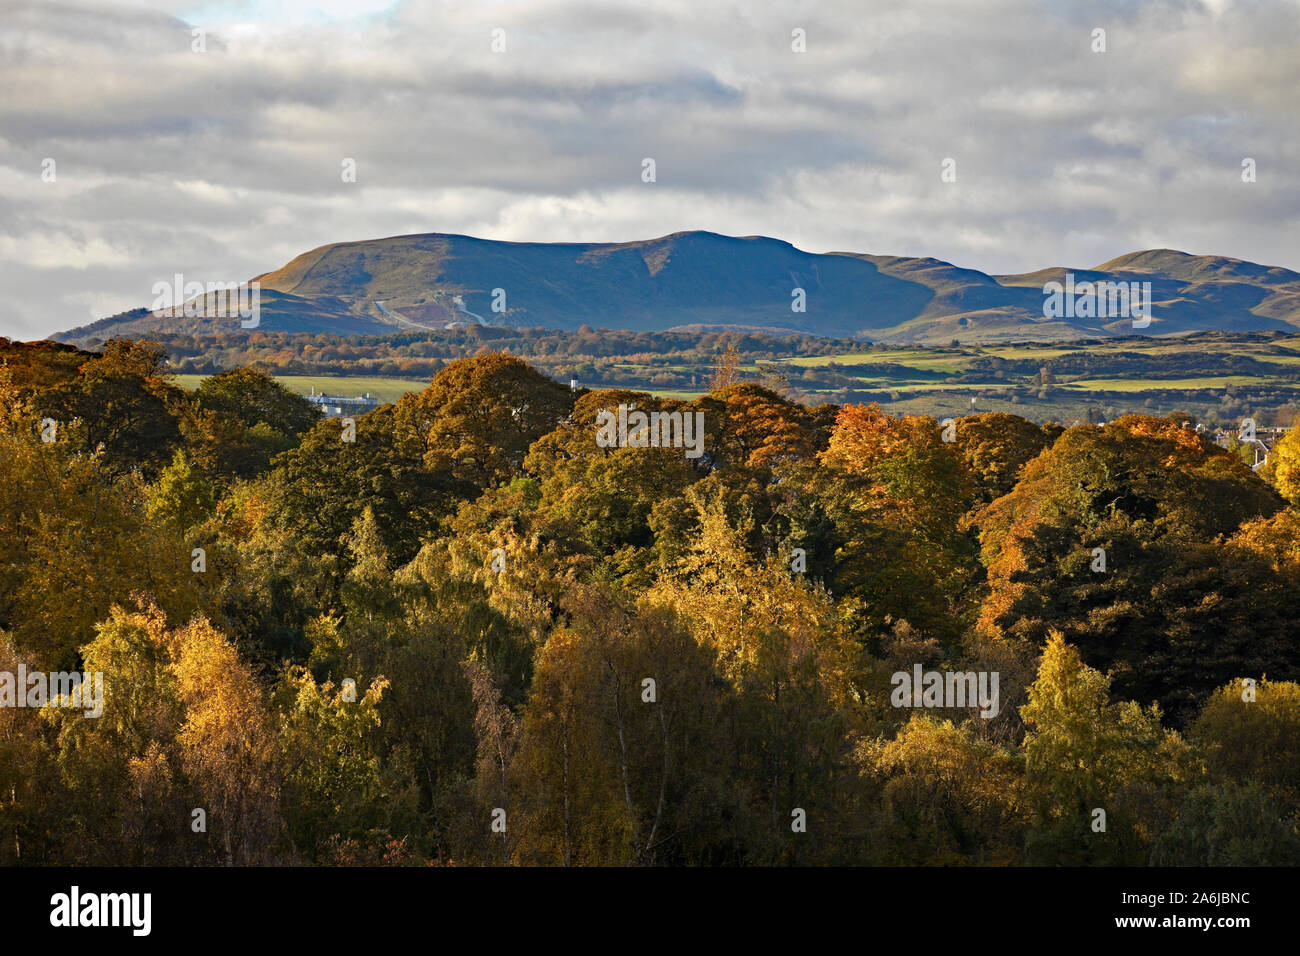 Pentland Hügel im Hintergrund mit herbstlichen Laub an den Bäumen im Vordergrund, Edinburgh, Schottland, Großbritannien Stockfoto